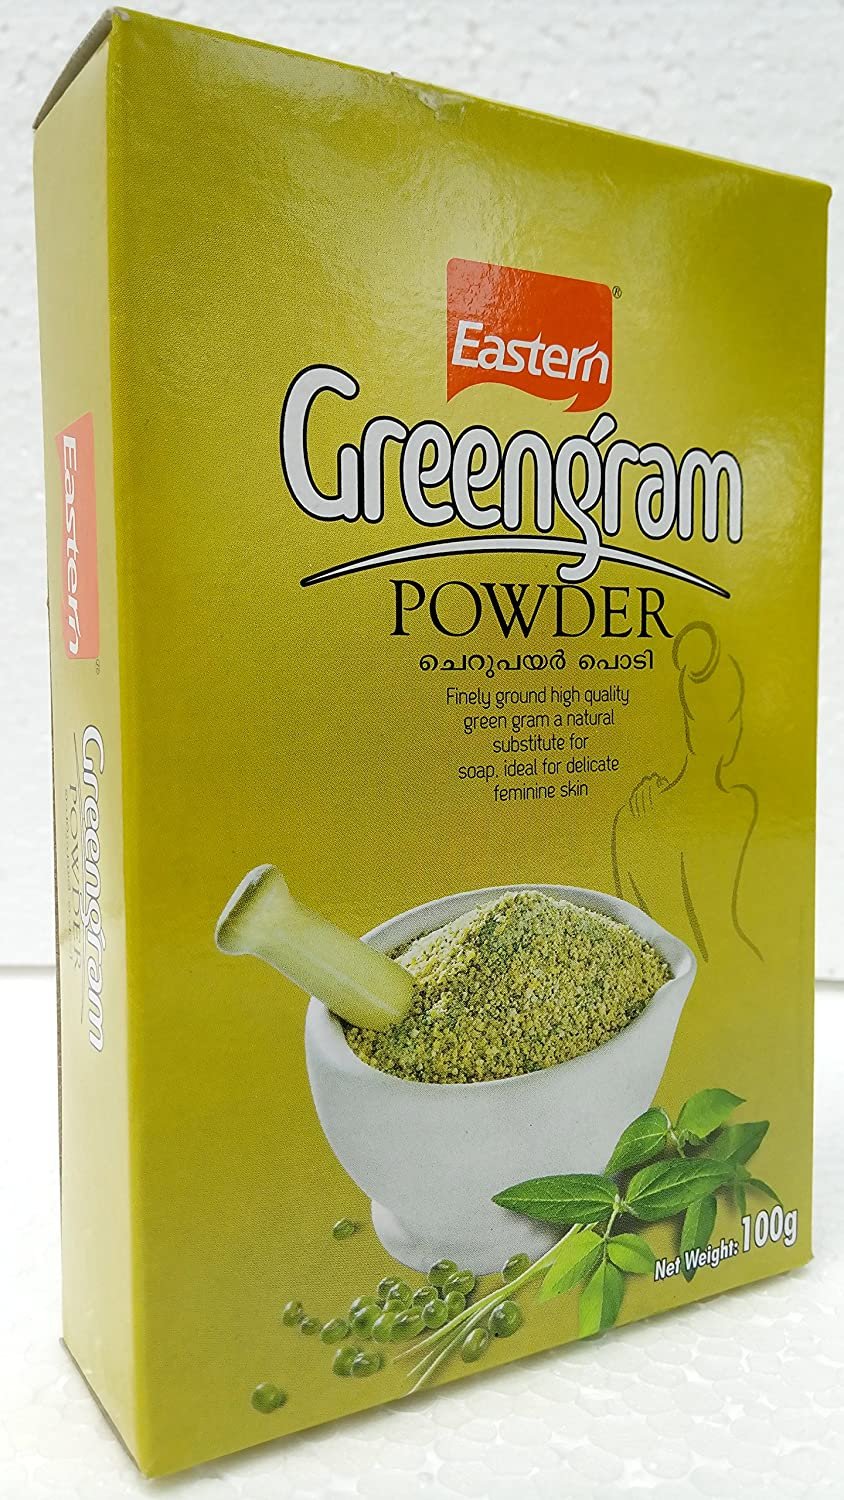 EEL Eastern Green Gram Powder 100g